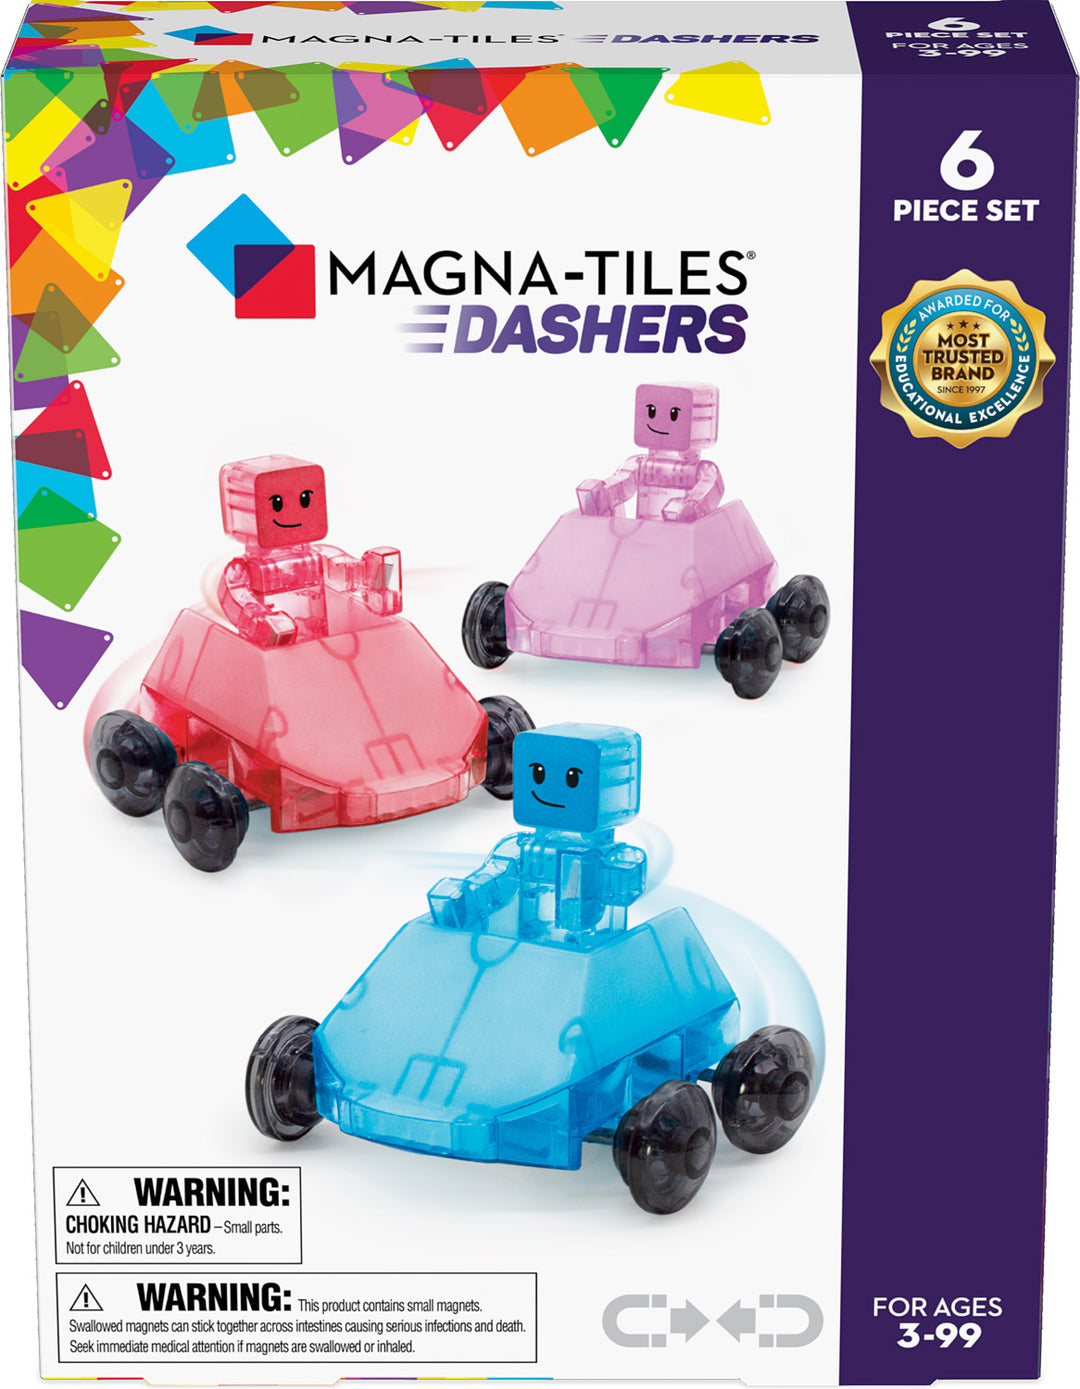 Dashers 6-Piece Set | Magna-Tiles